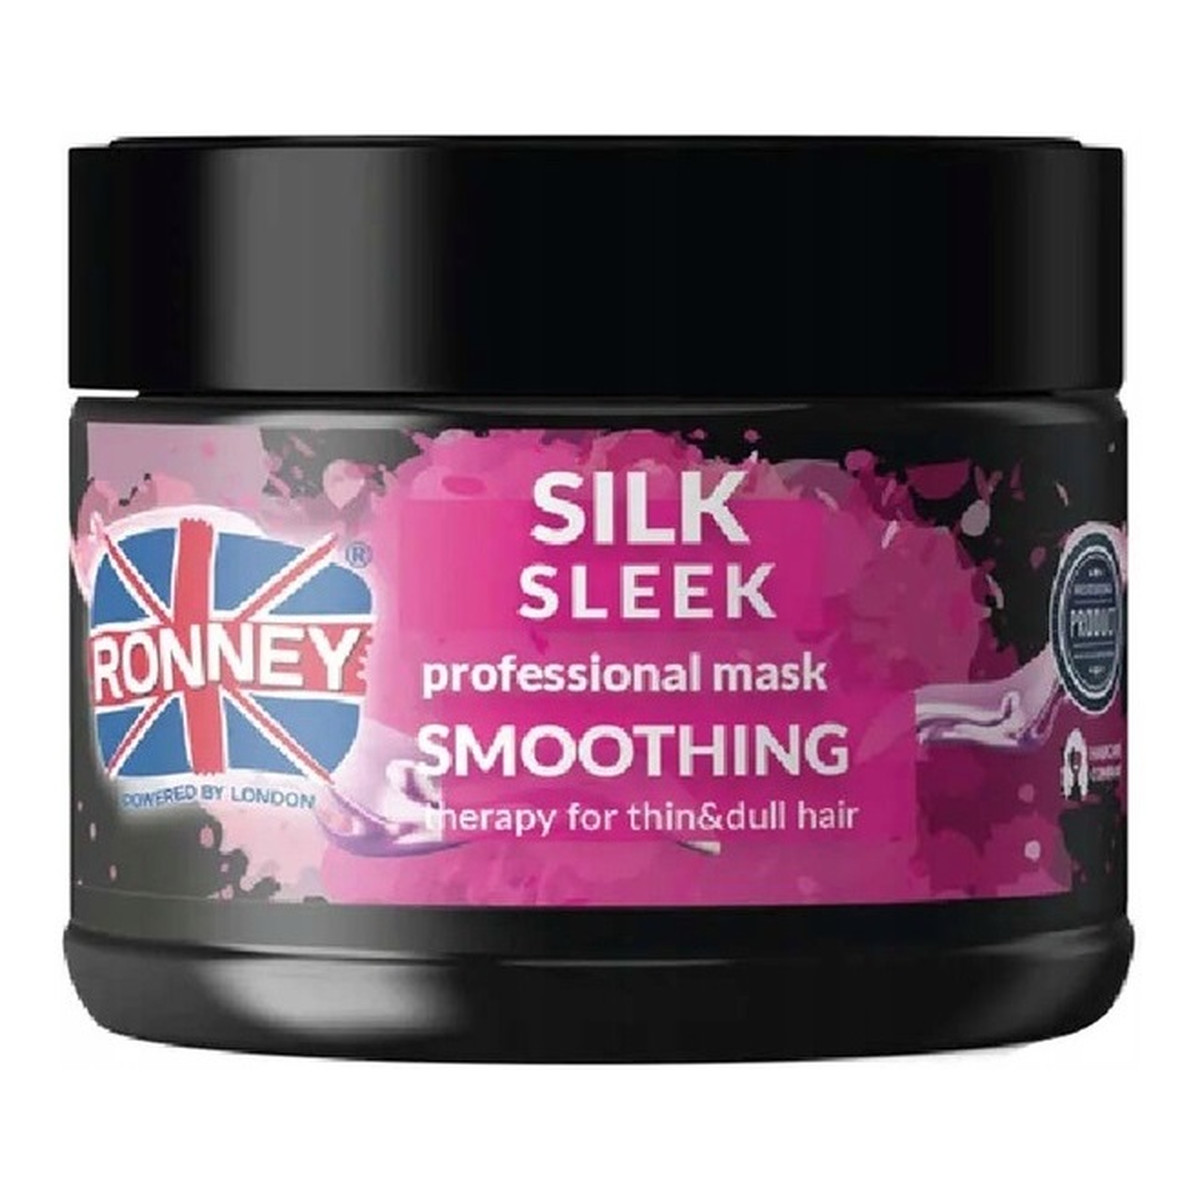 Ronney Silk sleek professional mask smoothing wygładzająca maska do włosów cienkich i matowych 300ml